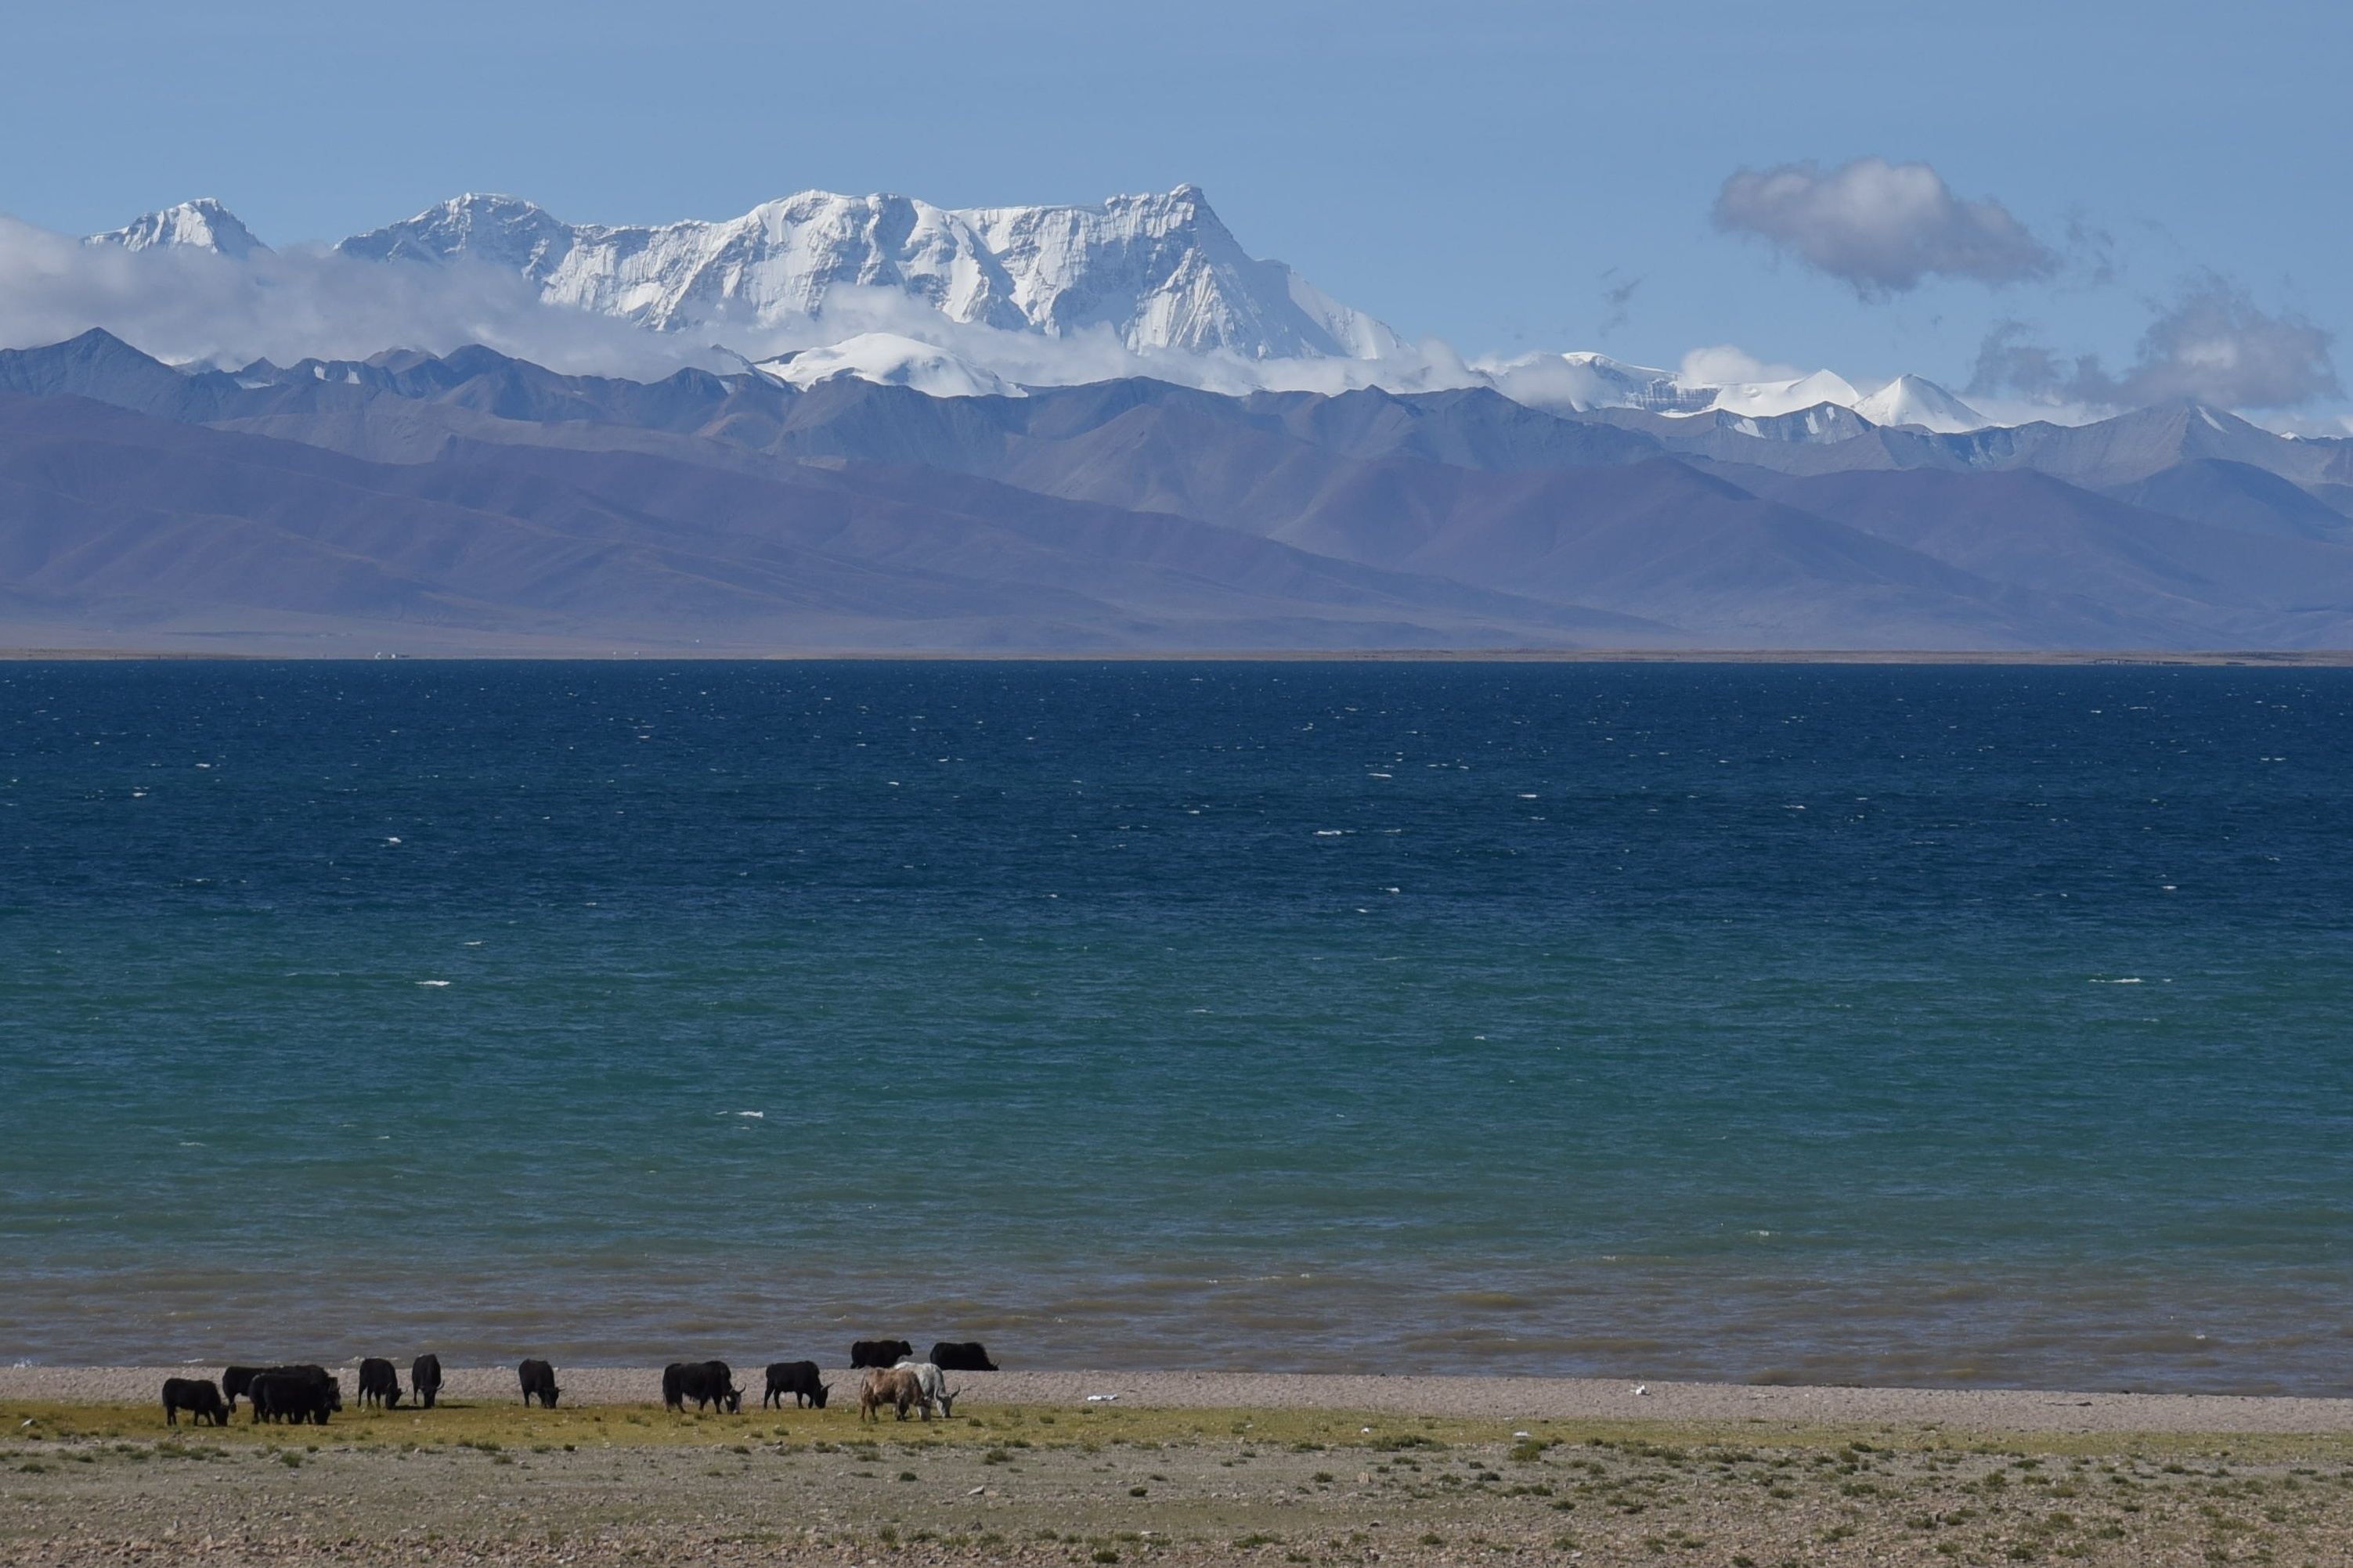 虎驾蓝搏西藏自驾之旅那根拉山5190米俯眺停车湖滩近观纳木措